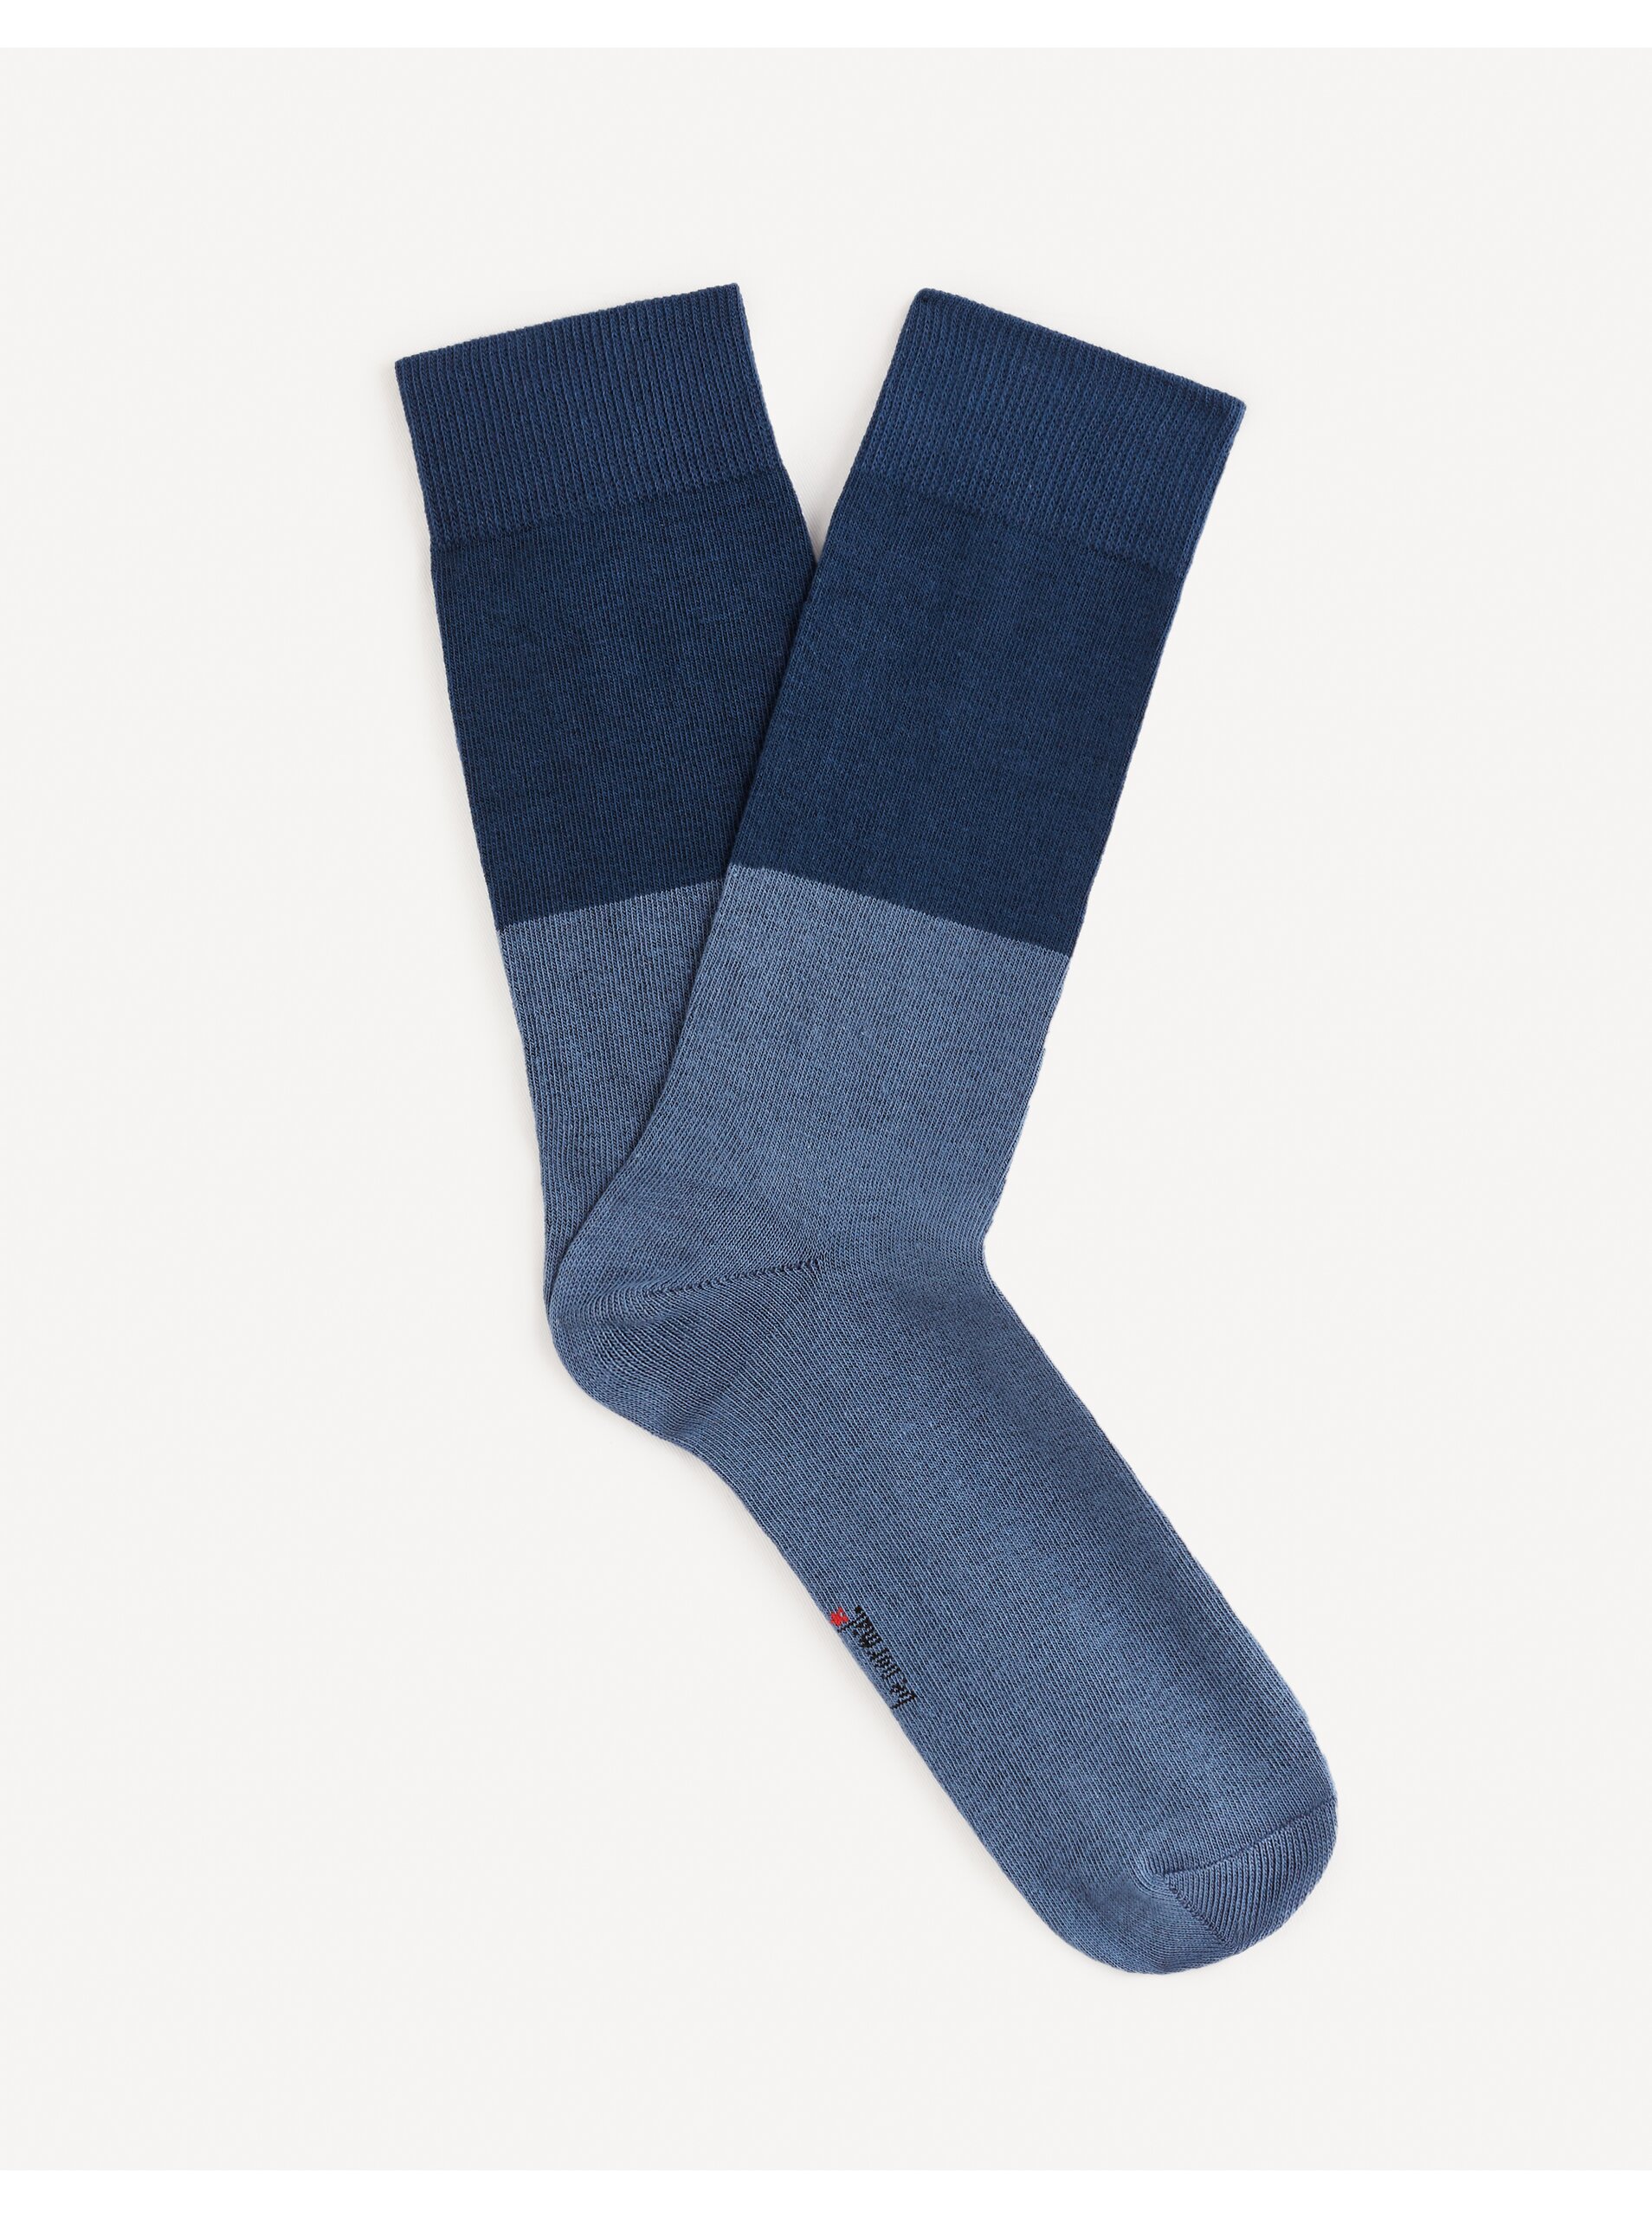 Lacno Modré pánske ponožky Celio Fiduobloc